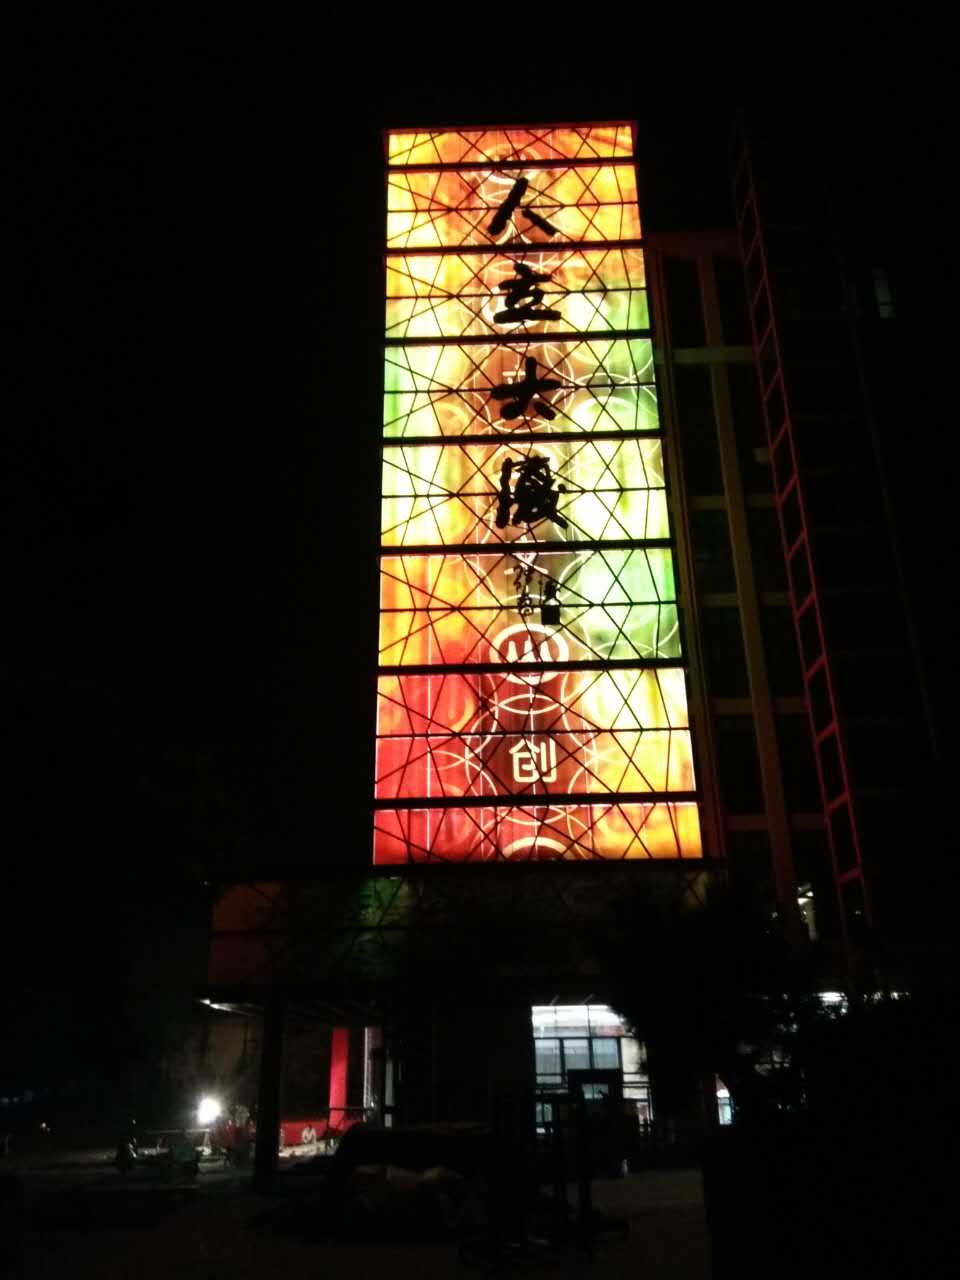 Ren Li Building